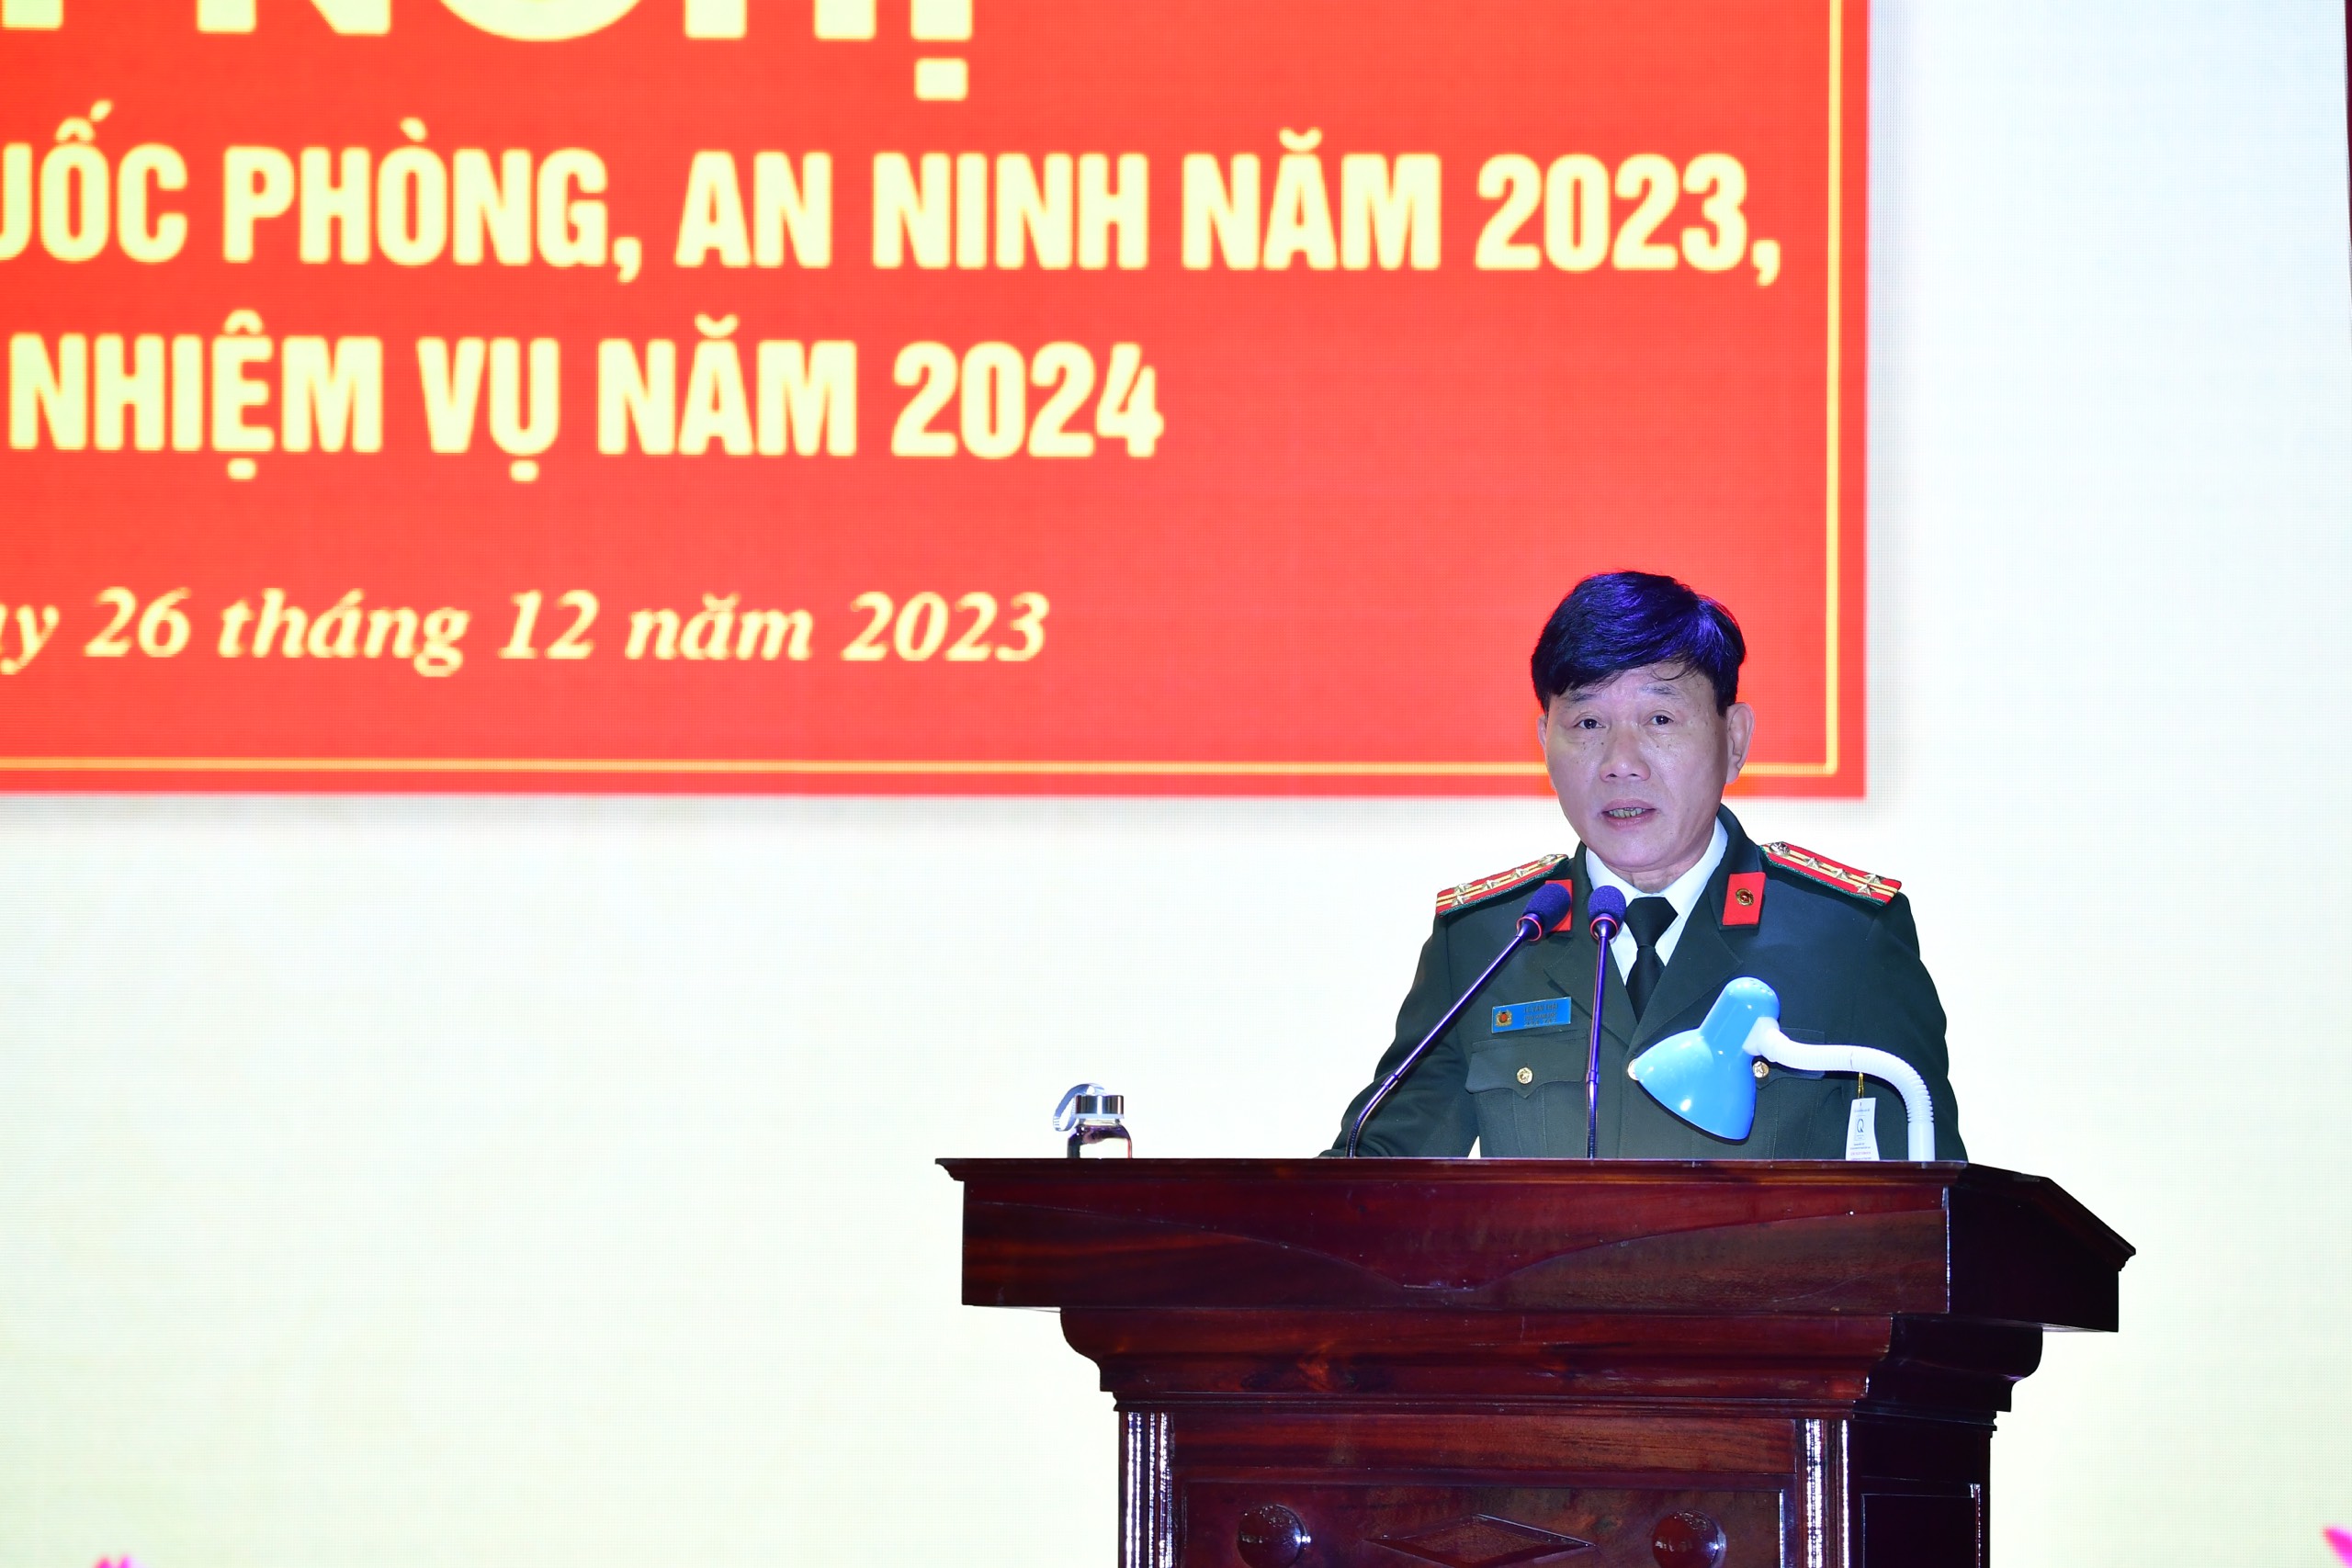 Đại tá Lê Văn Thái - Phó Giám đốc Công an tỉnh phát biểu tại Hội nghị